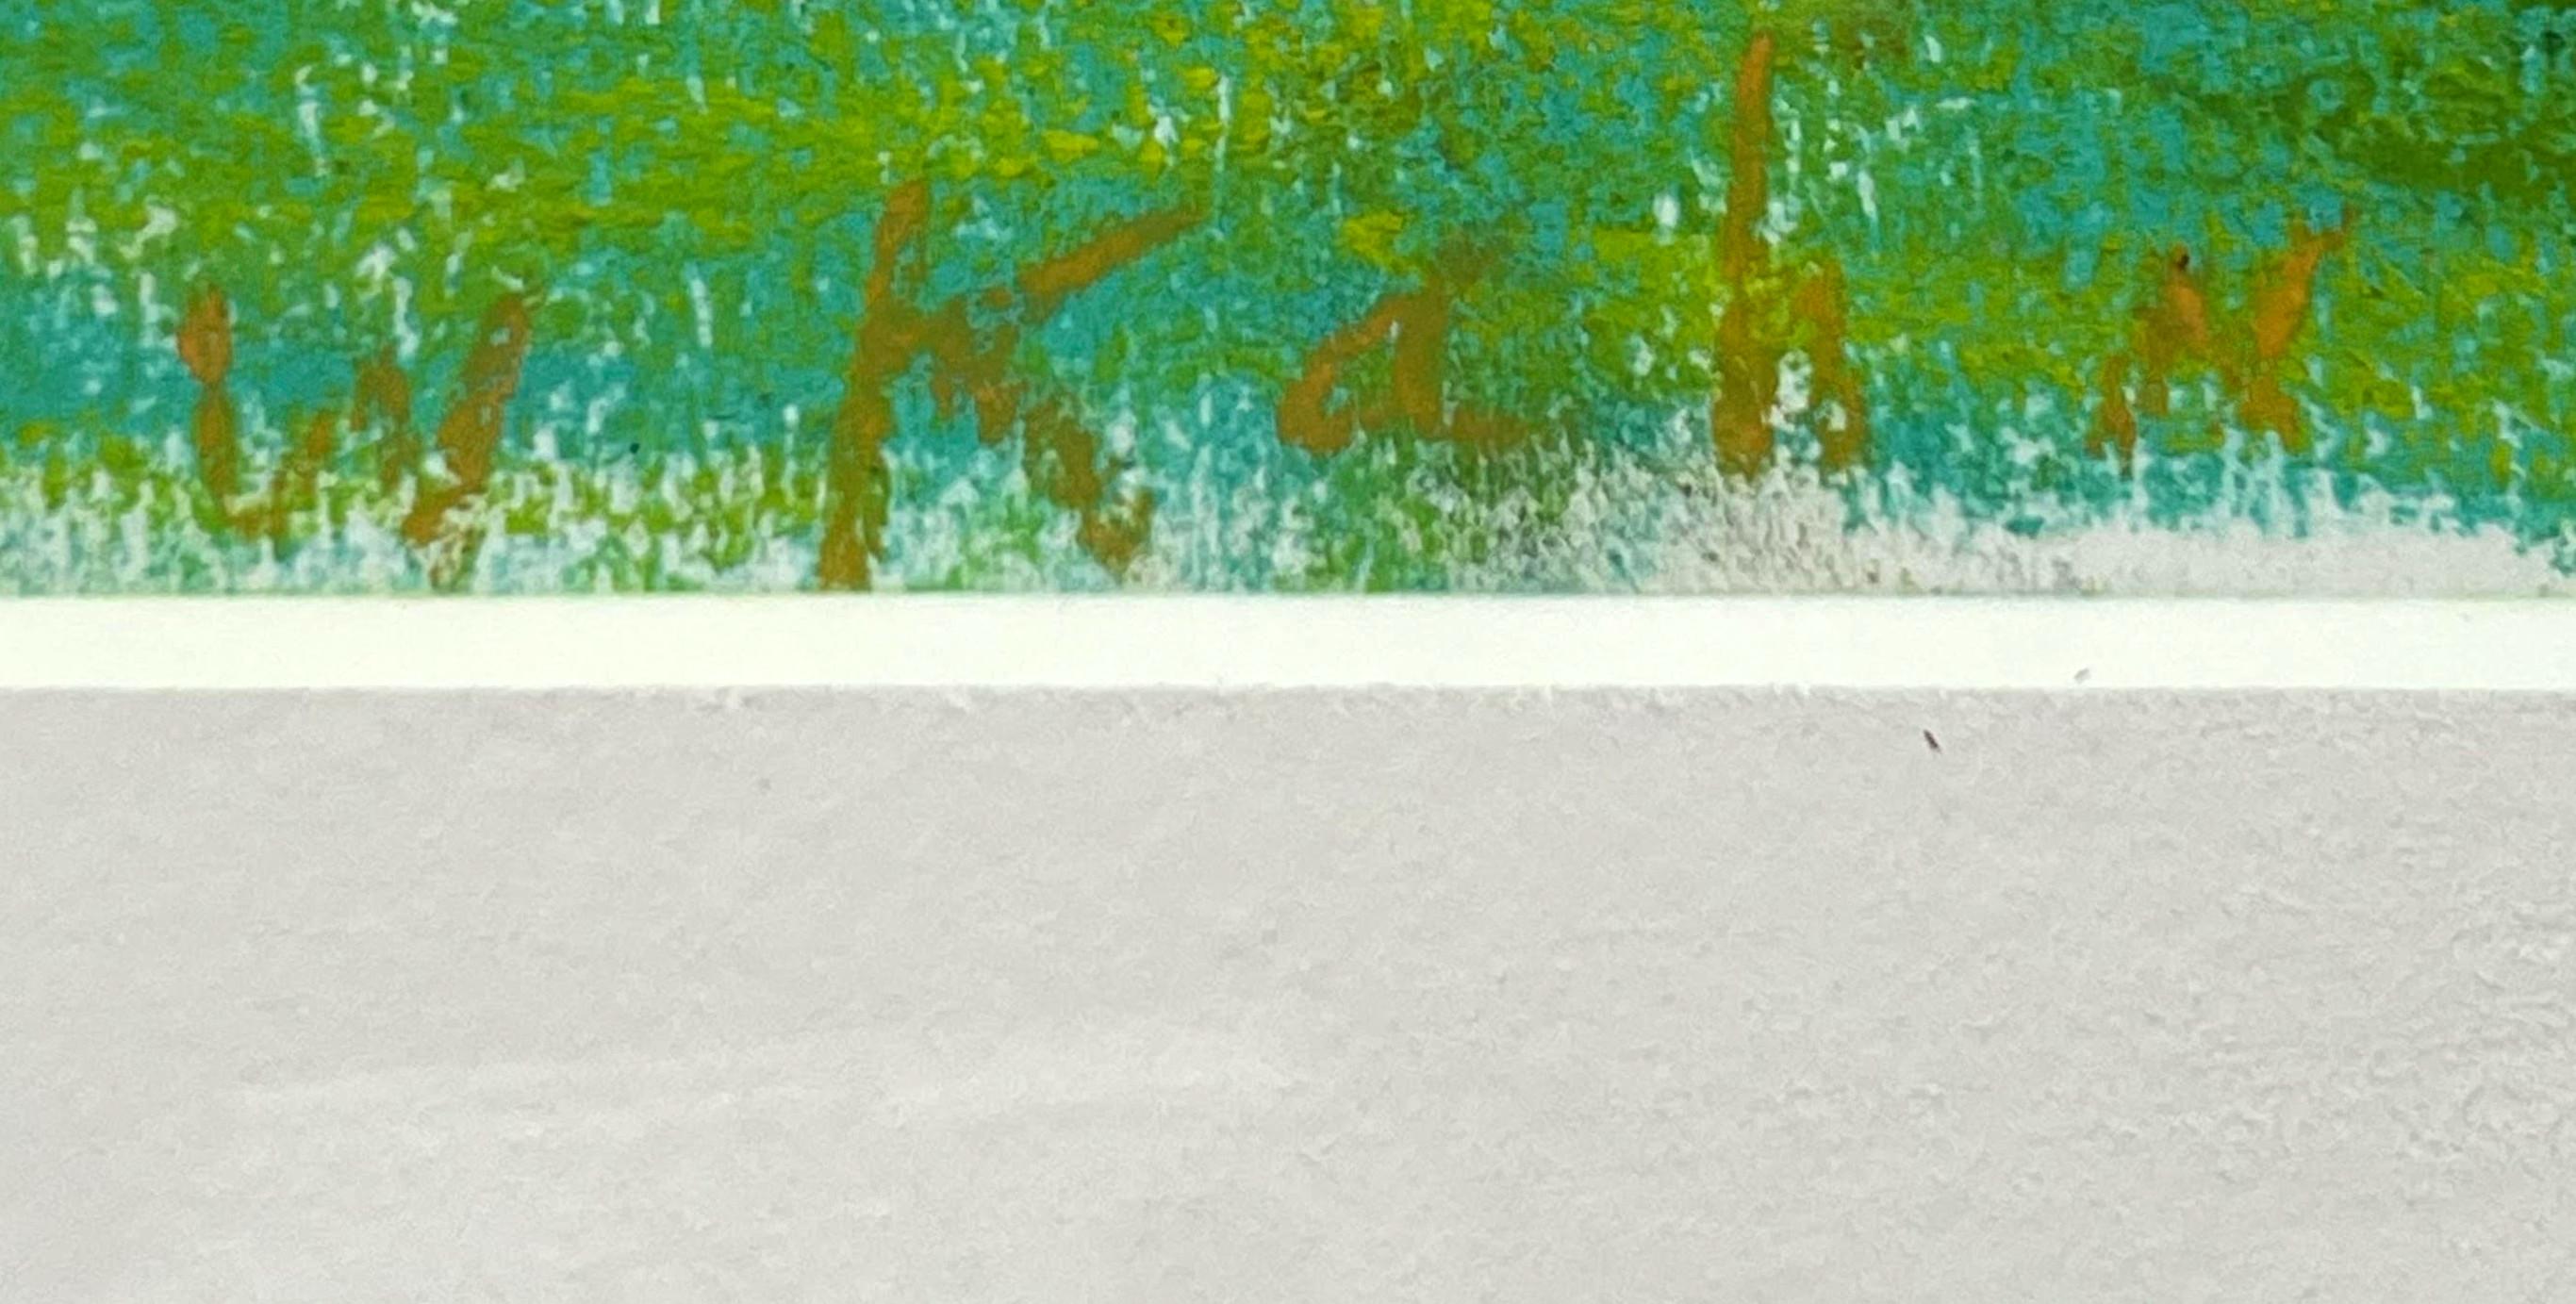 WOLFS Kahn
Blau-Grün (Bleu-Vert), 2000
Peinture au pastel sur papier
Signé sur le devant en bas à gauche
Cadre inclus : élégamment encadré dans un cadre en bois blanc de qualité musée avec plexiglas UV
avec étiquette originale de la Galerie